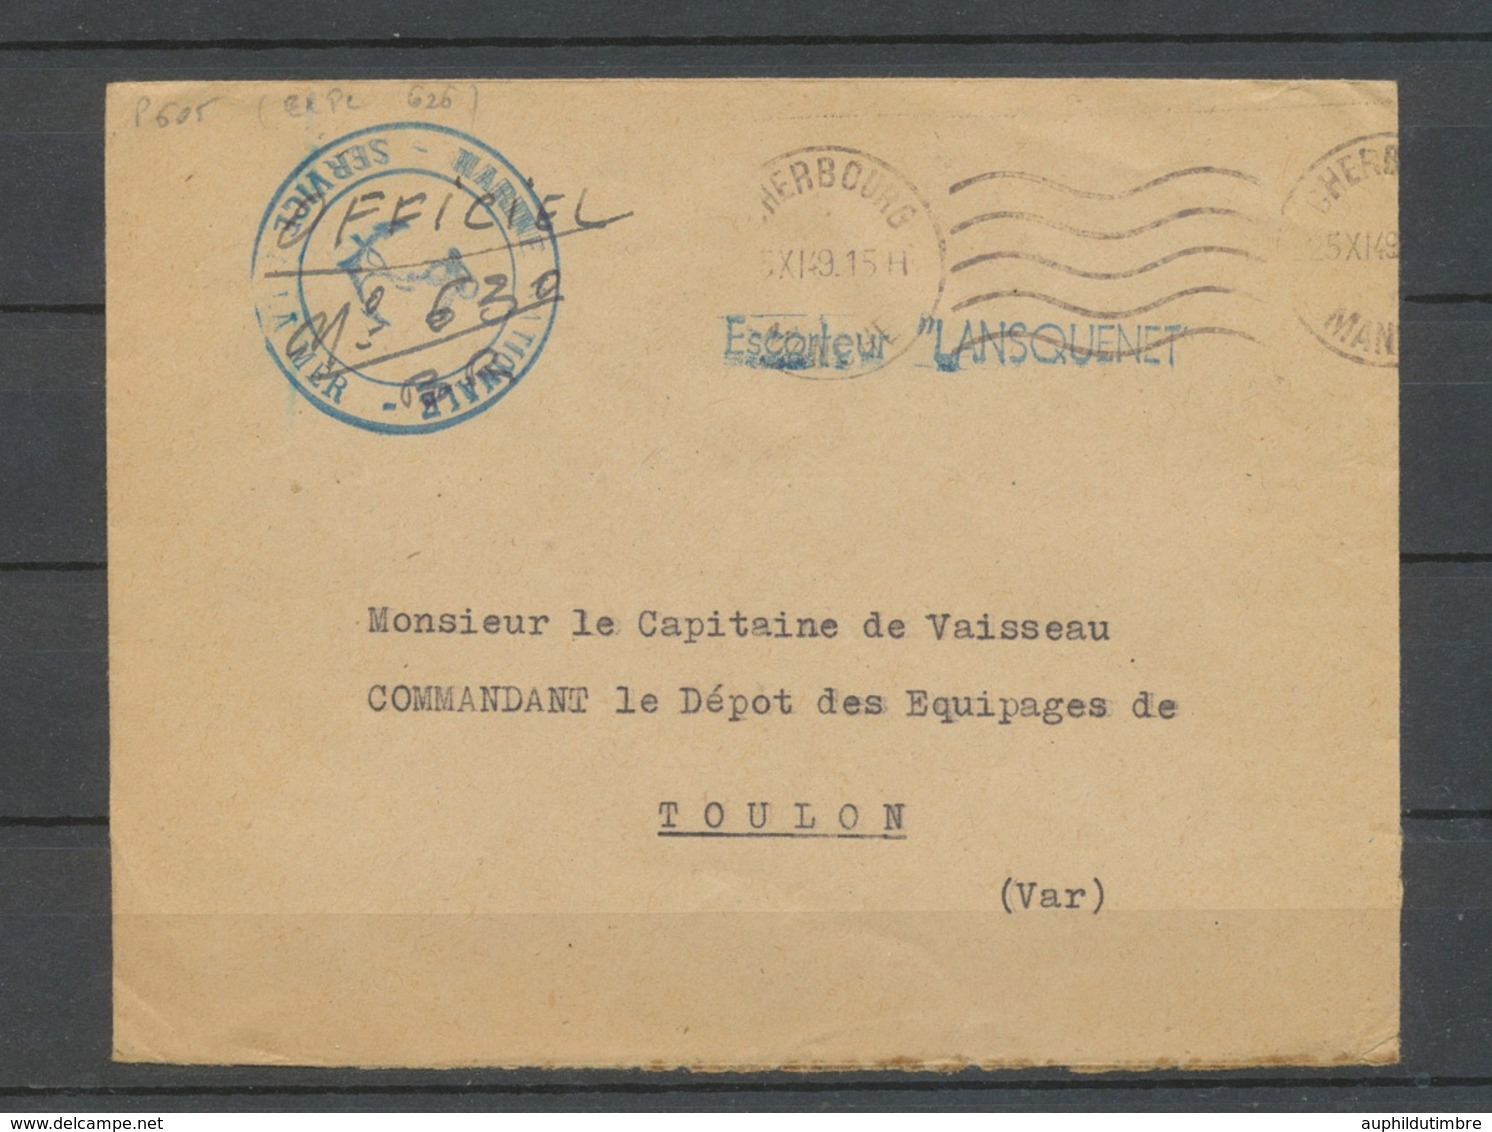 1949 Env. En FM Griffe Escorteur "LANSQUENET" X3752 - Maritime Post